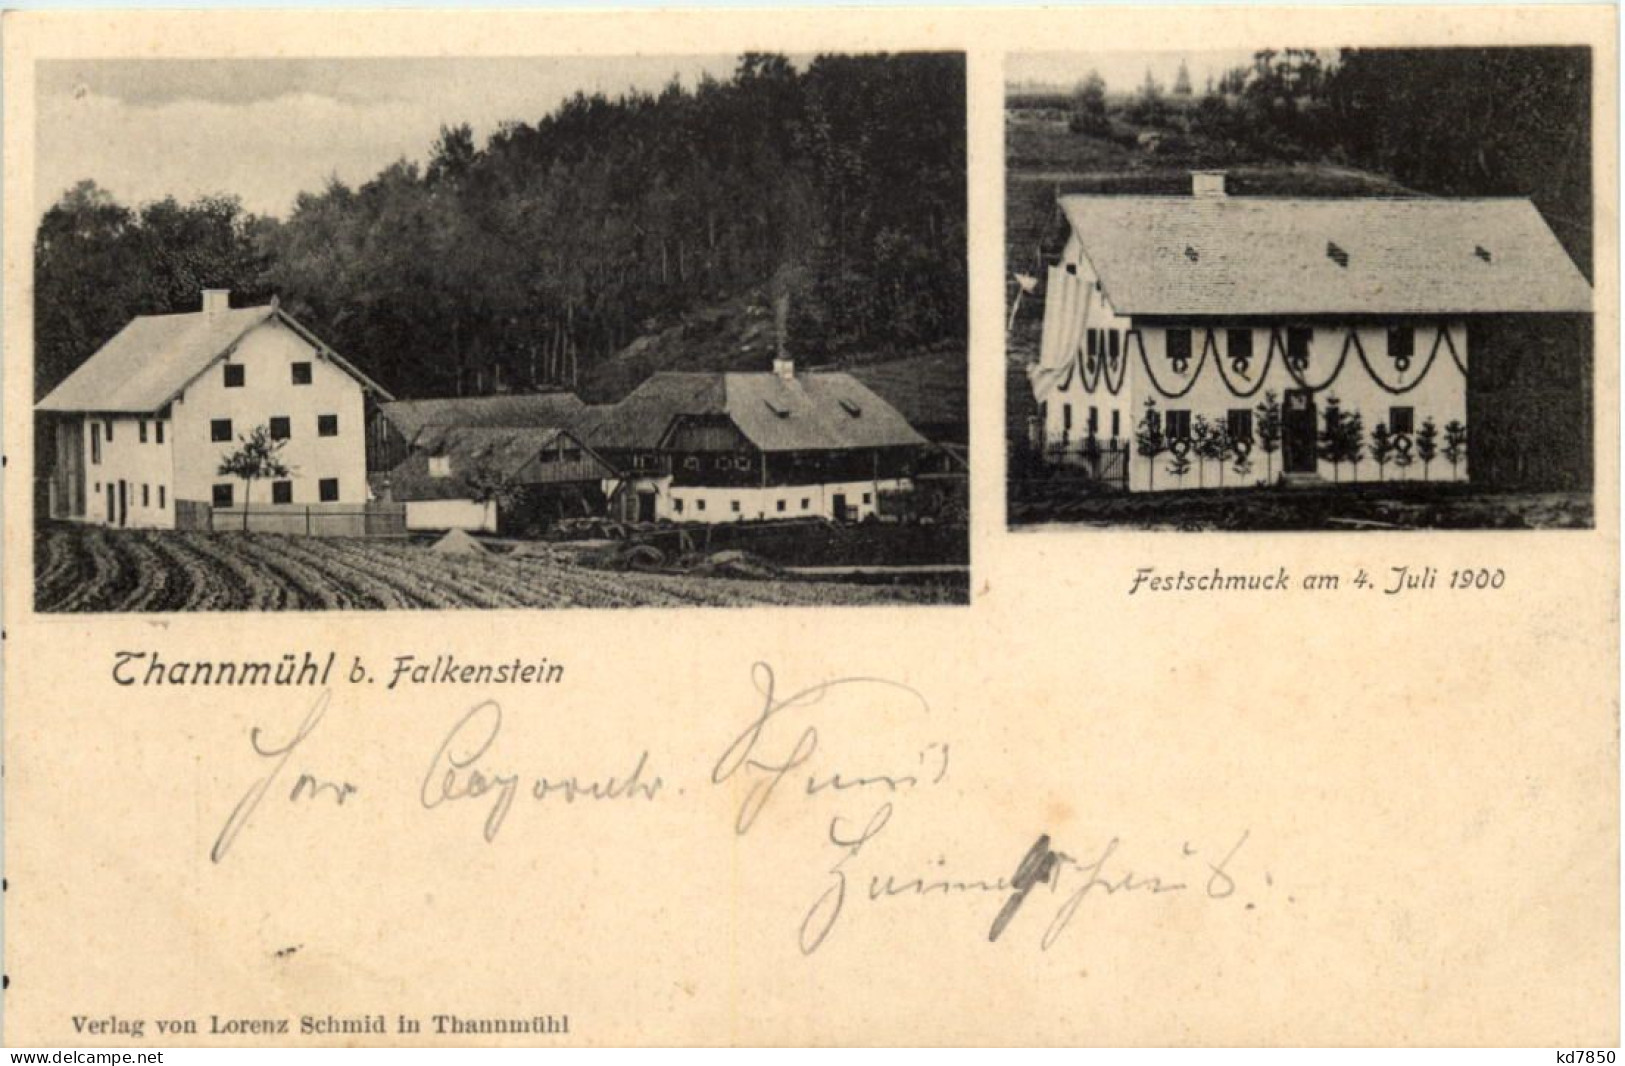 Thannmühl Bei Falkenstein - Festschmuck 1900 - Cham